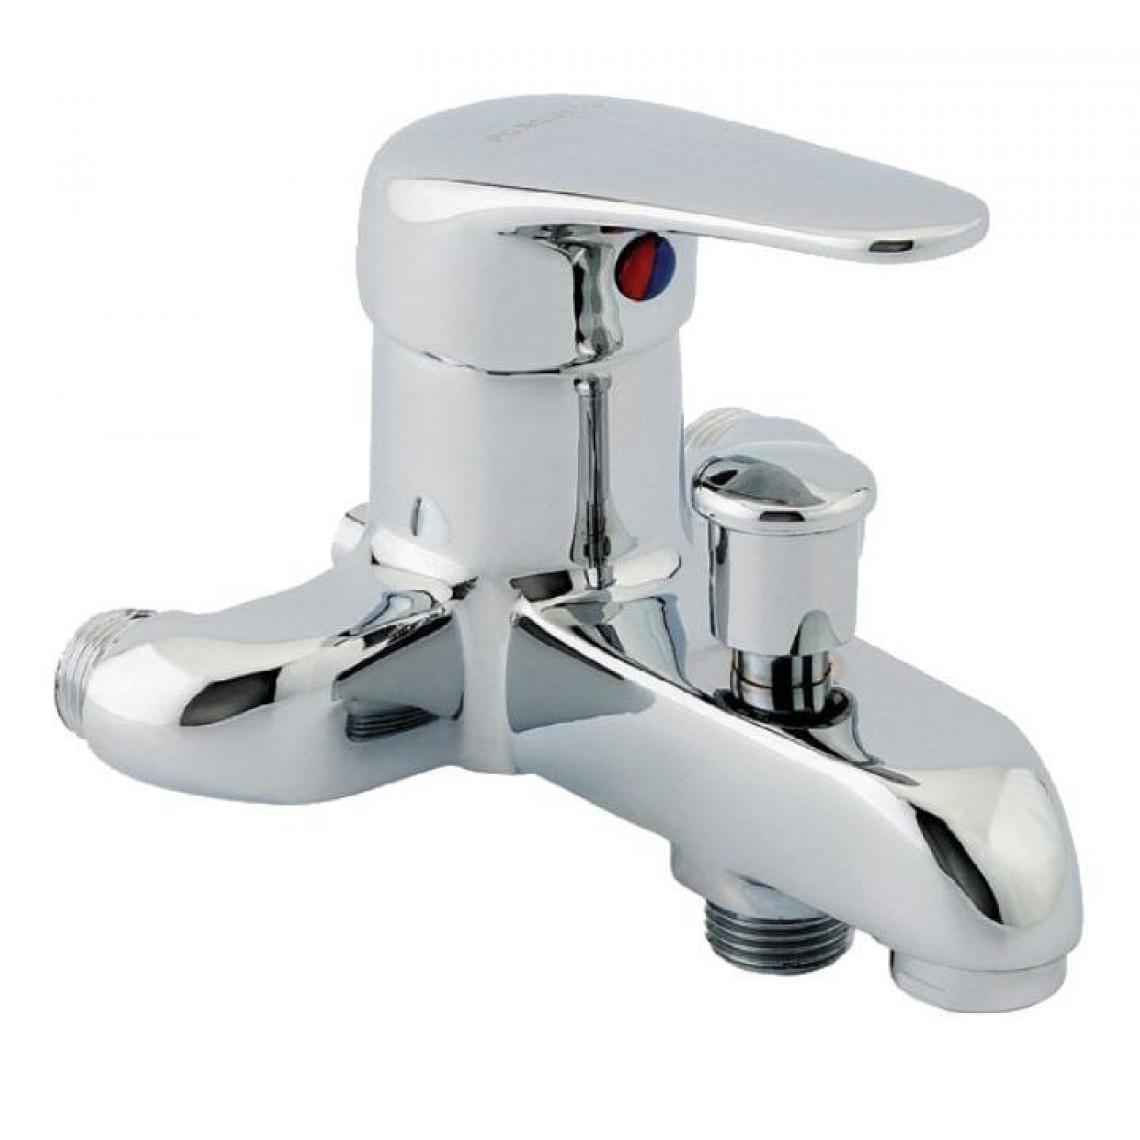 Rei tregi - Plomberie - Mitigeur bain-douche entraxes spéciaux 110 mm - Mitigeur douche